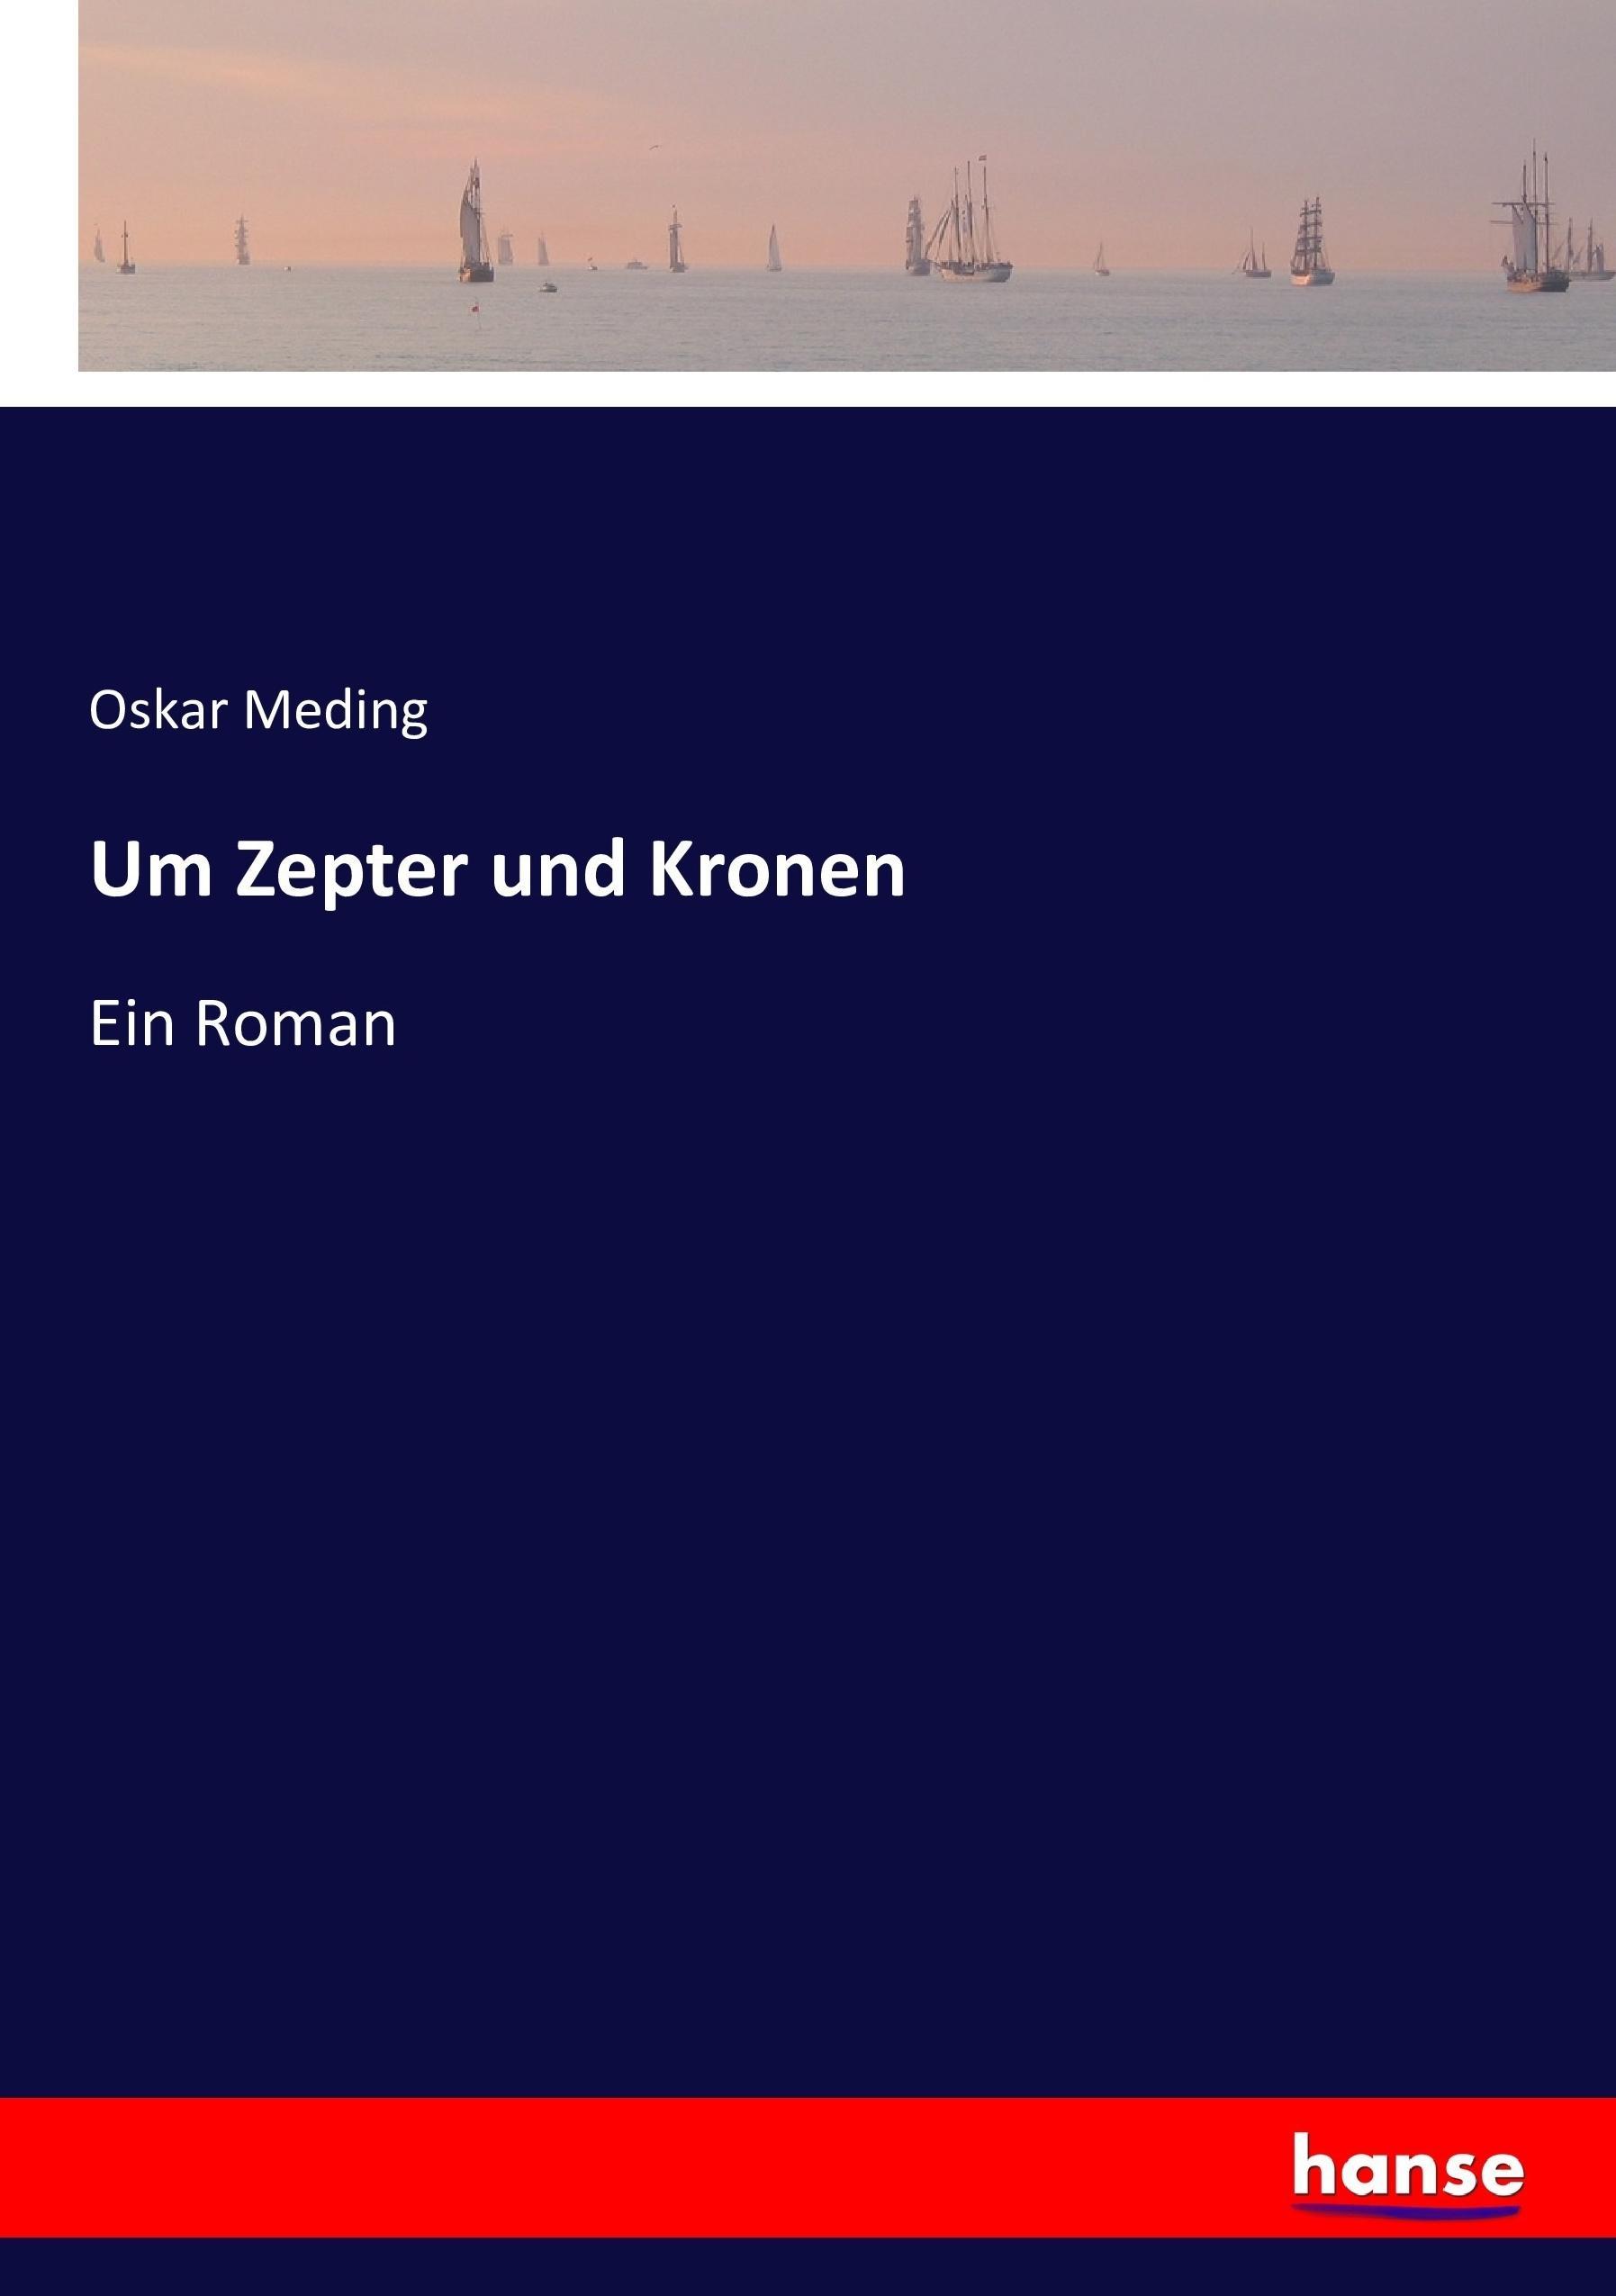 Um Zepter und Kronen / Ein Roman / Oskar Meding / Taschenbuch / Paperback / 384 S. / Deutsch / 2016 / hansebooks / EAN 9783743365889 - Meding, Oskar